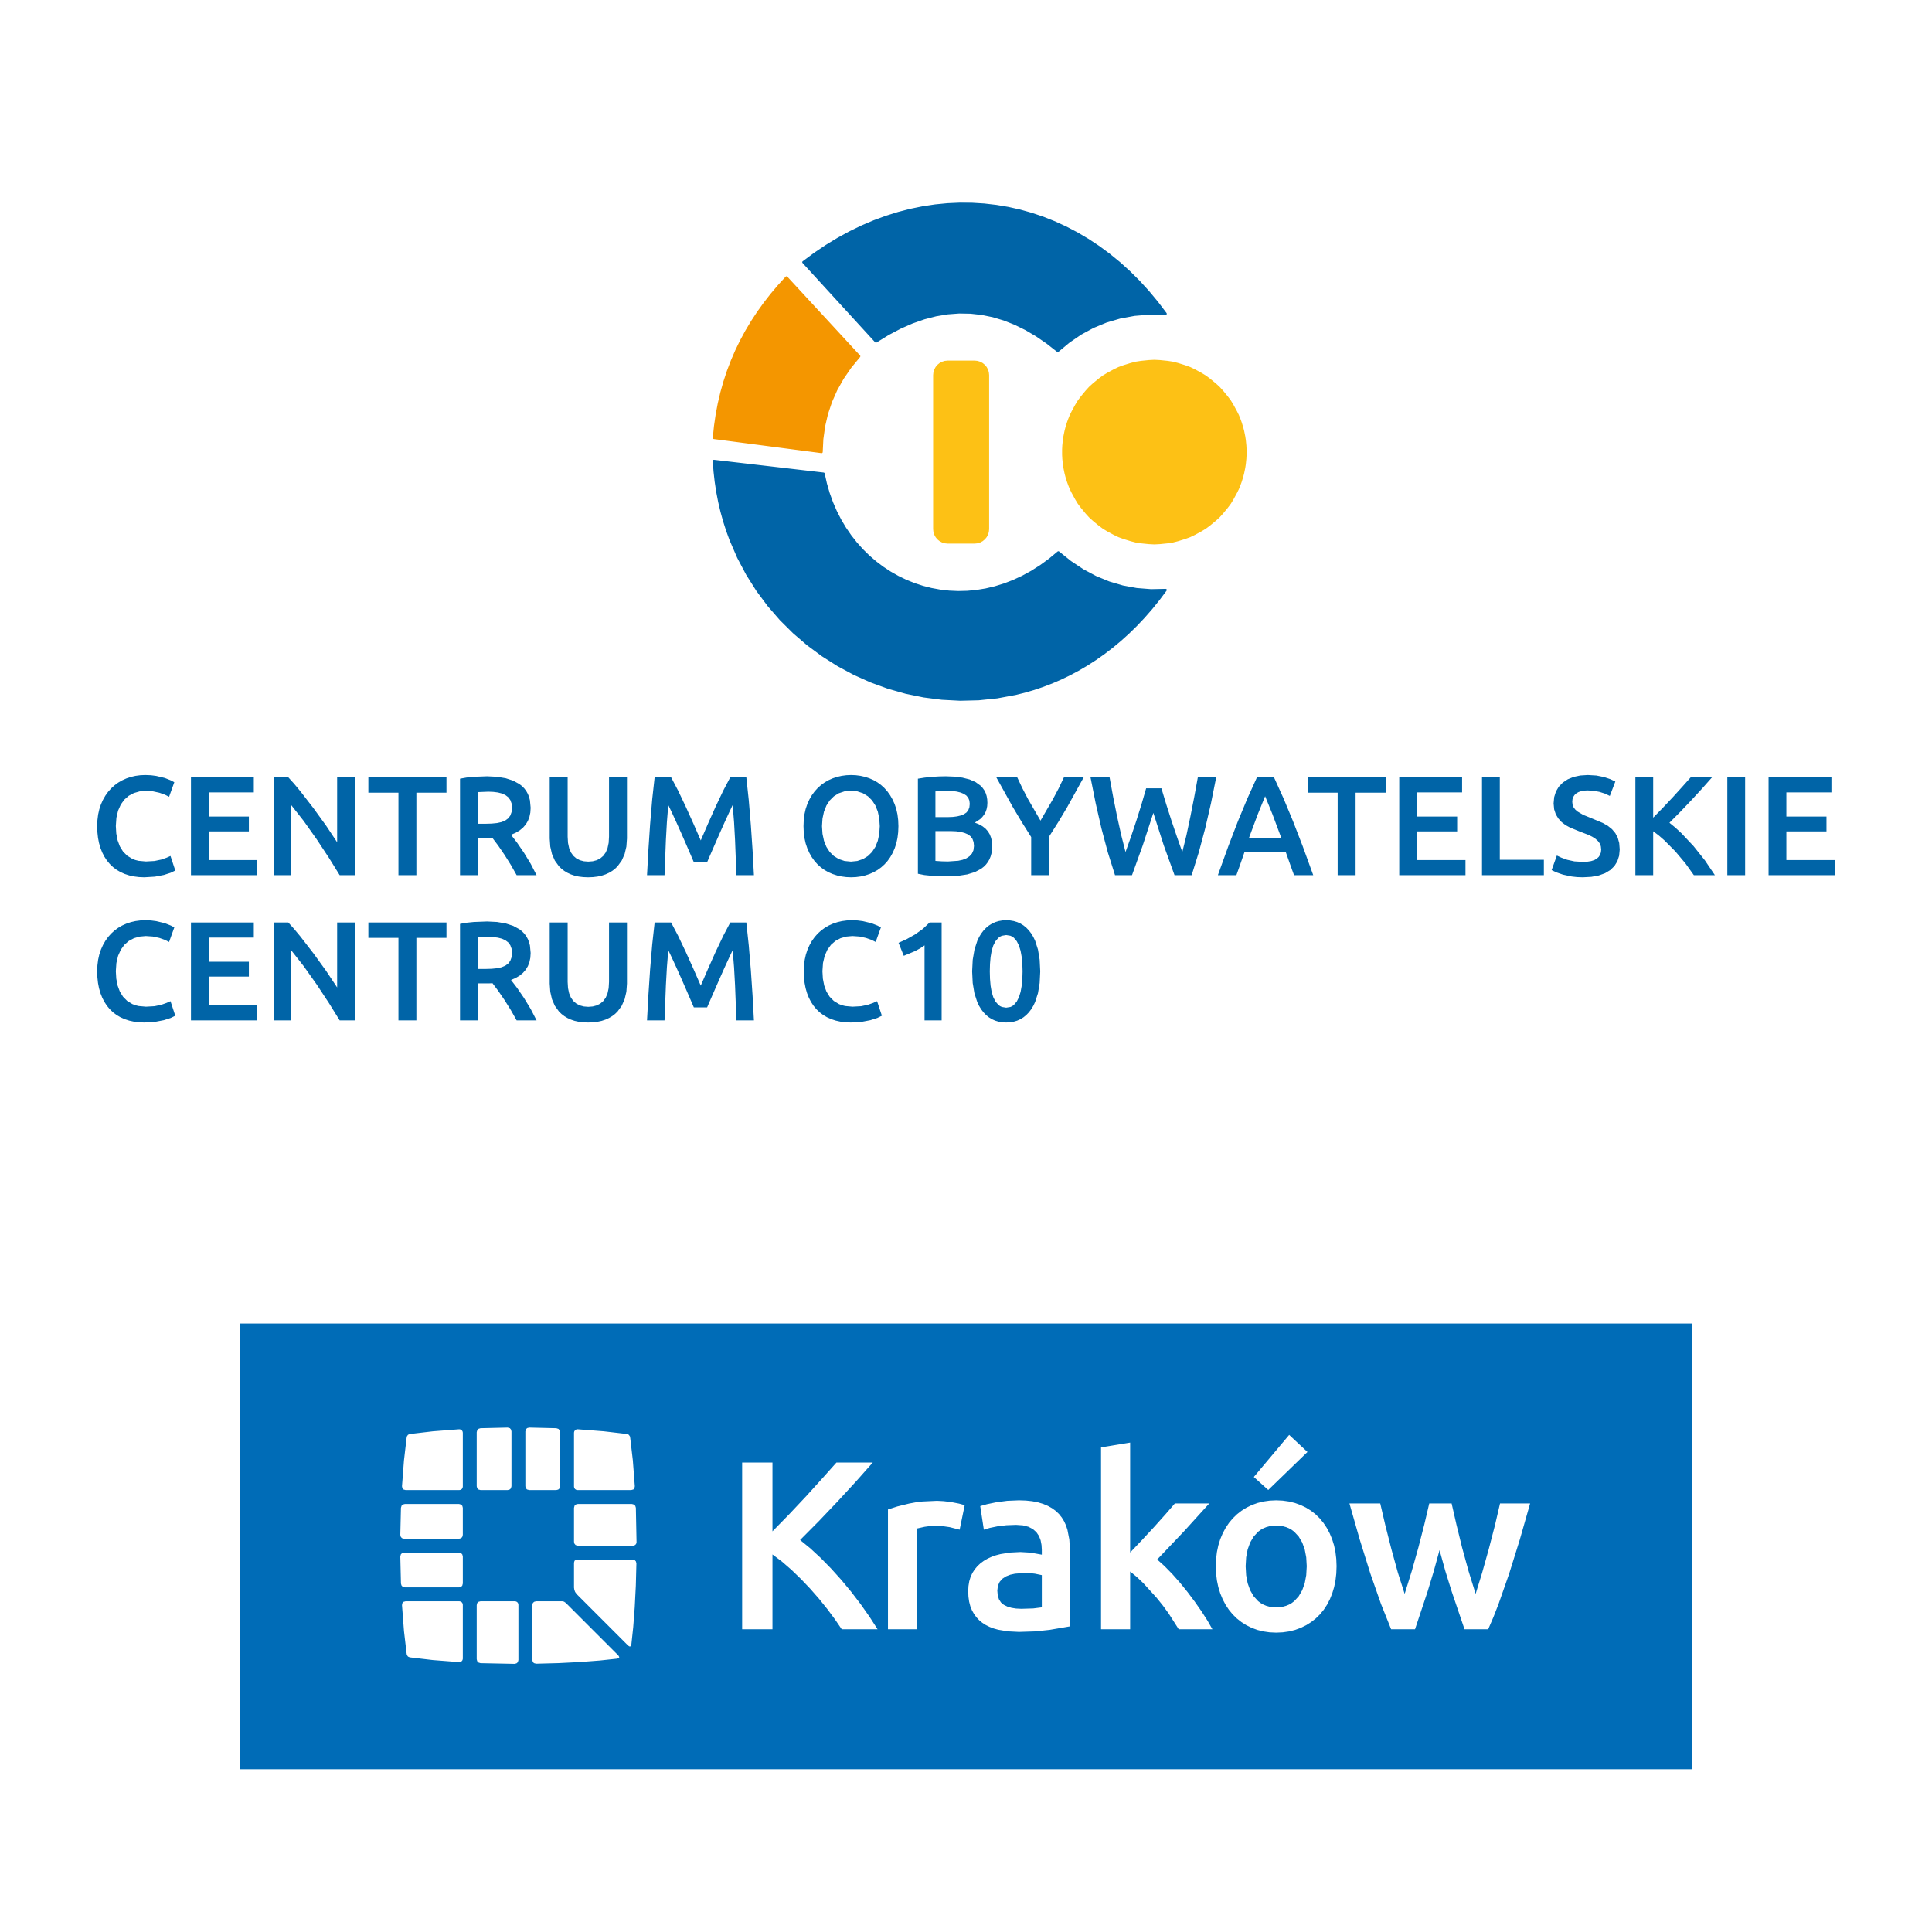 Centrum Obywatelskie Centrum C 10 w Krakowie